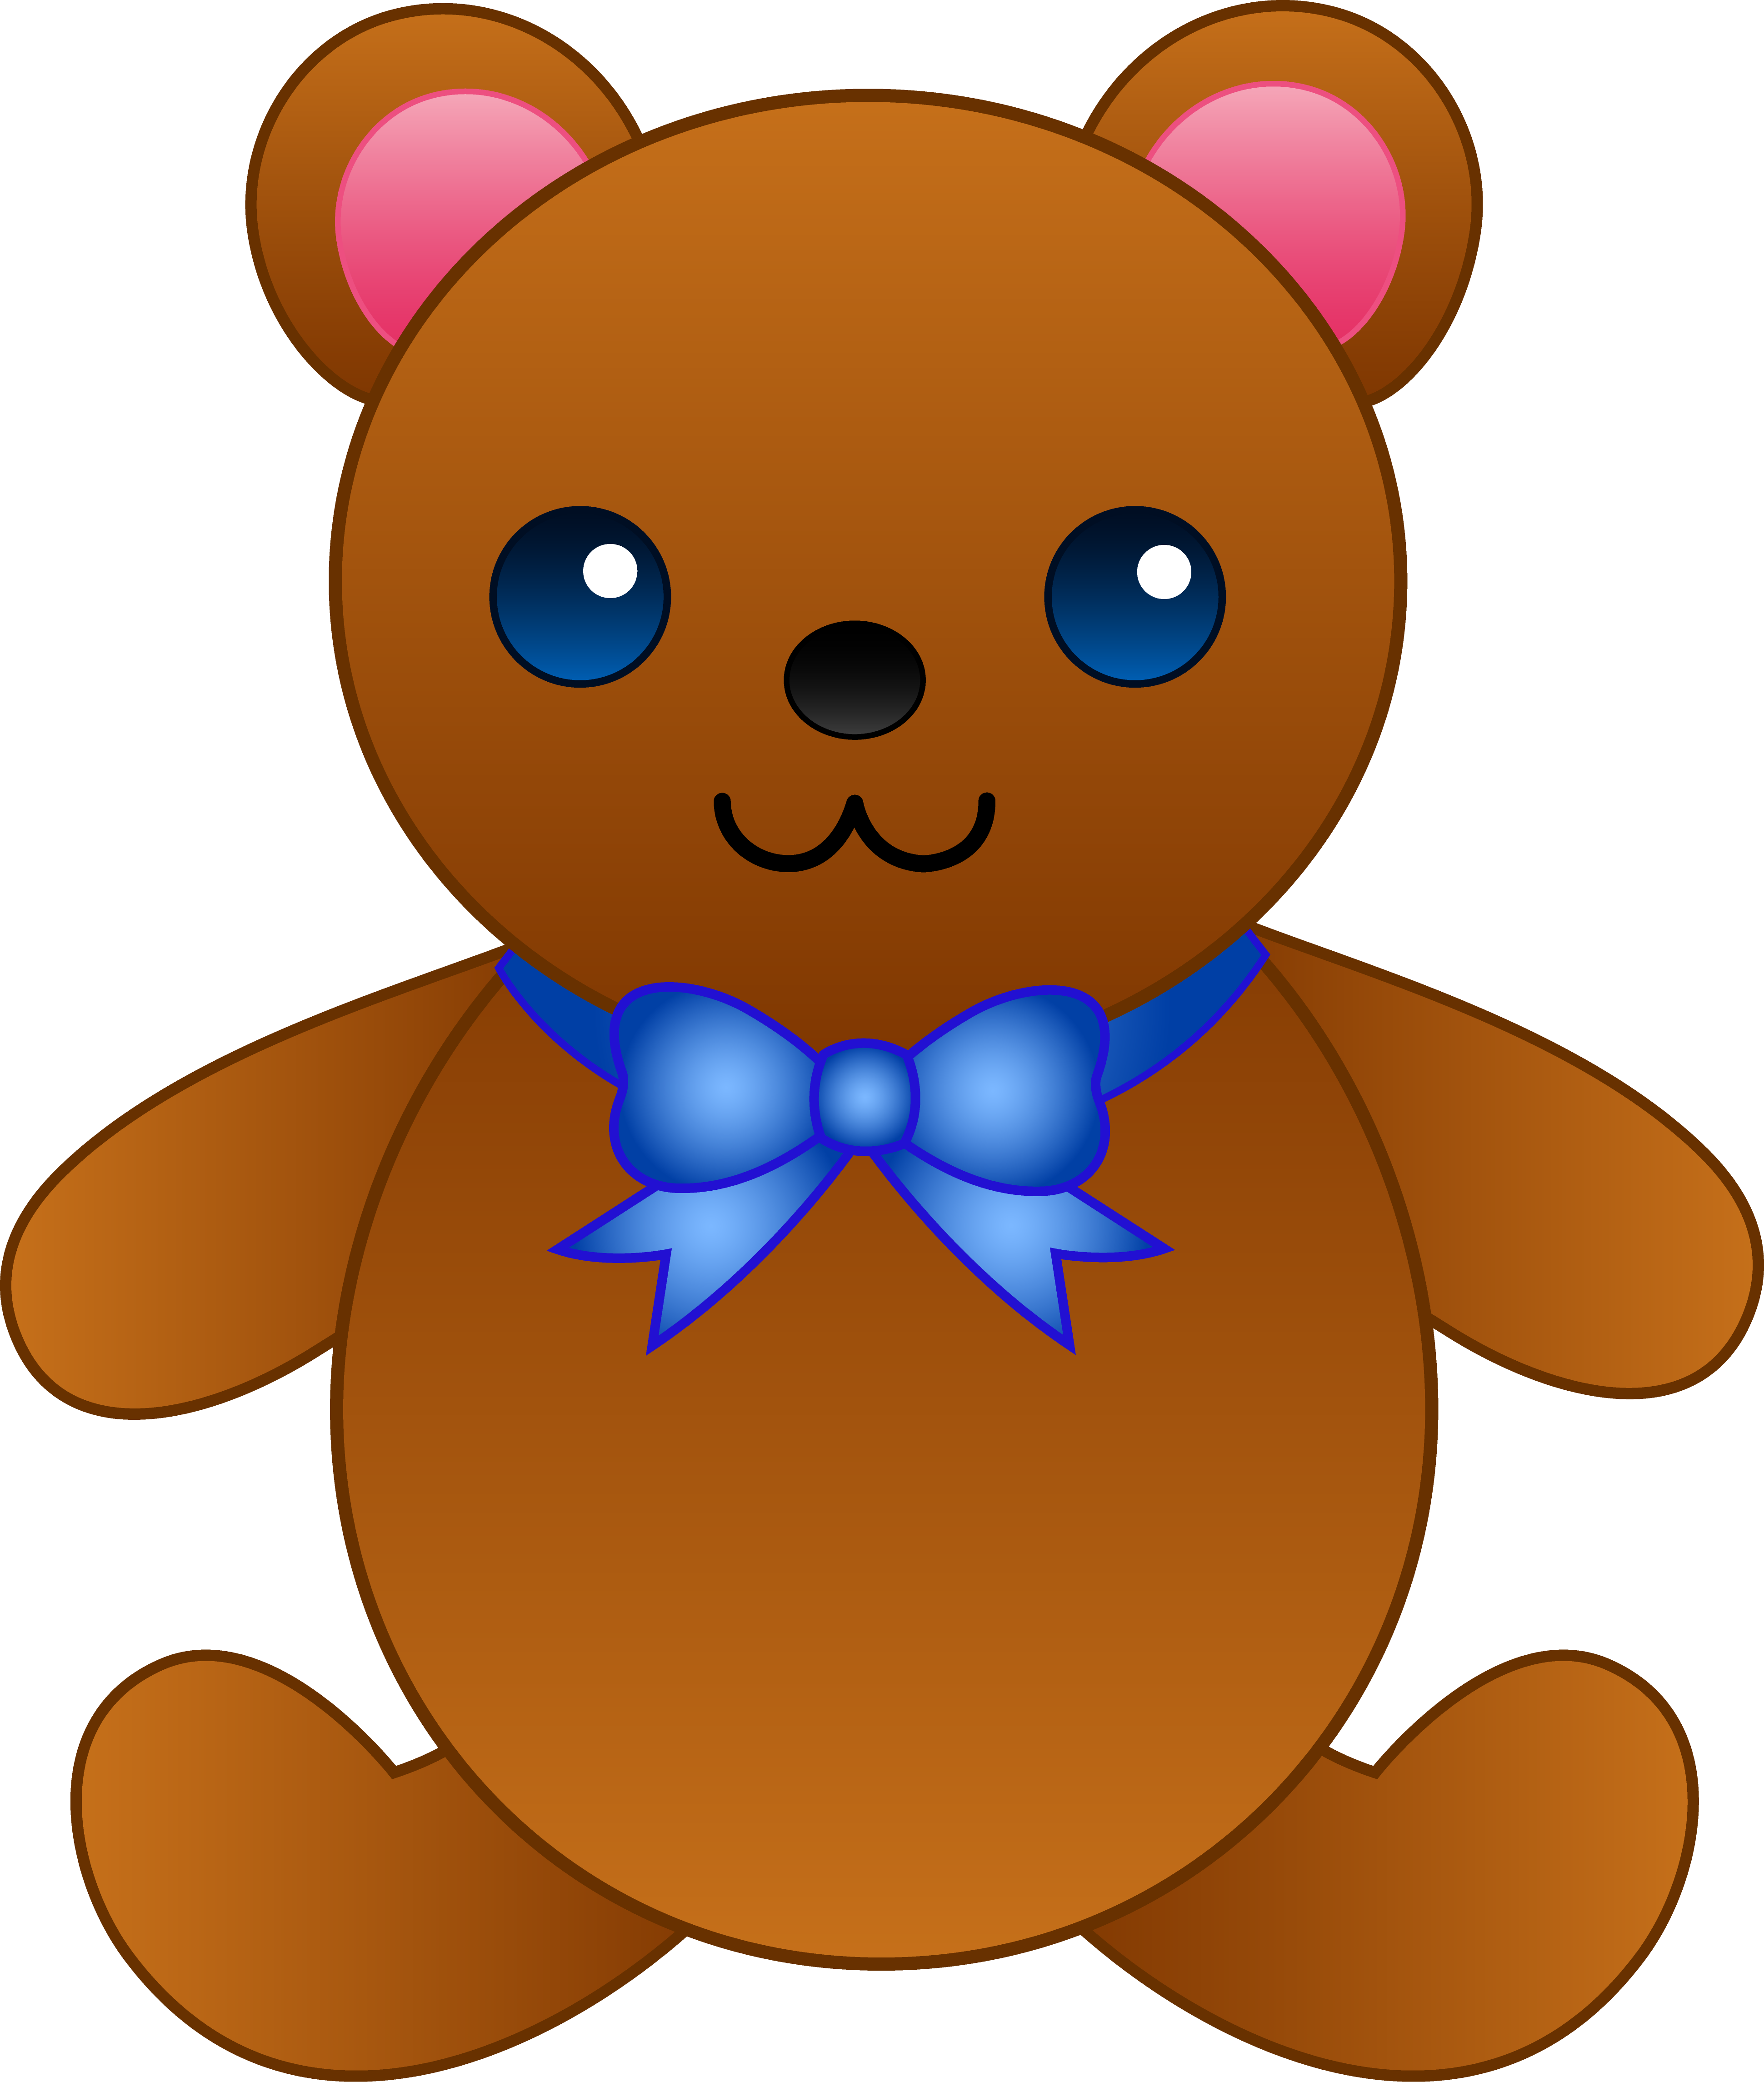 Animated teddy bear clipart